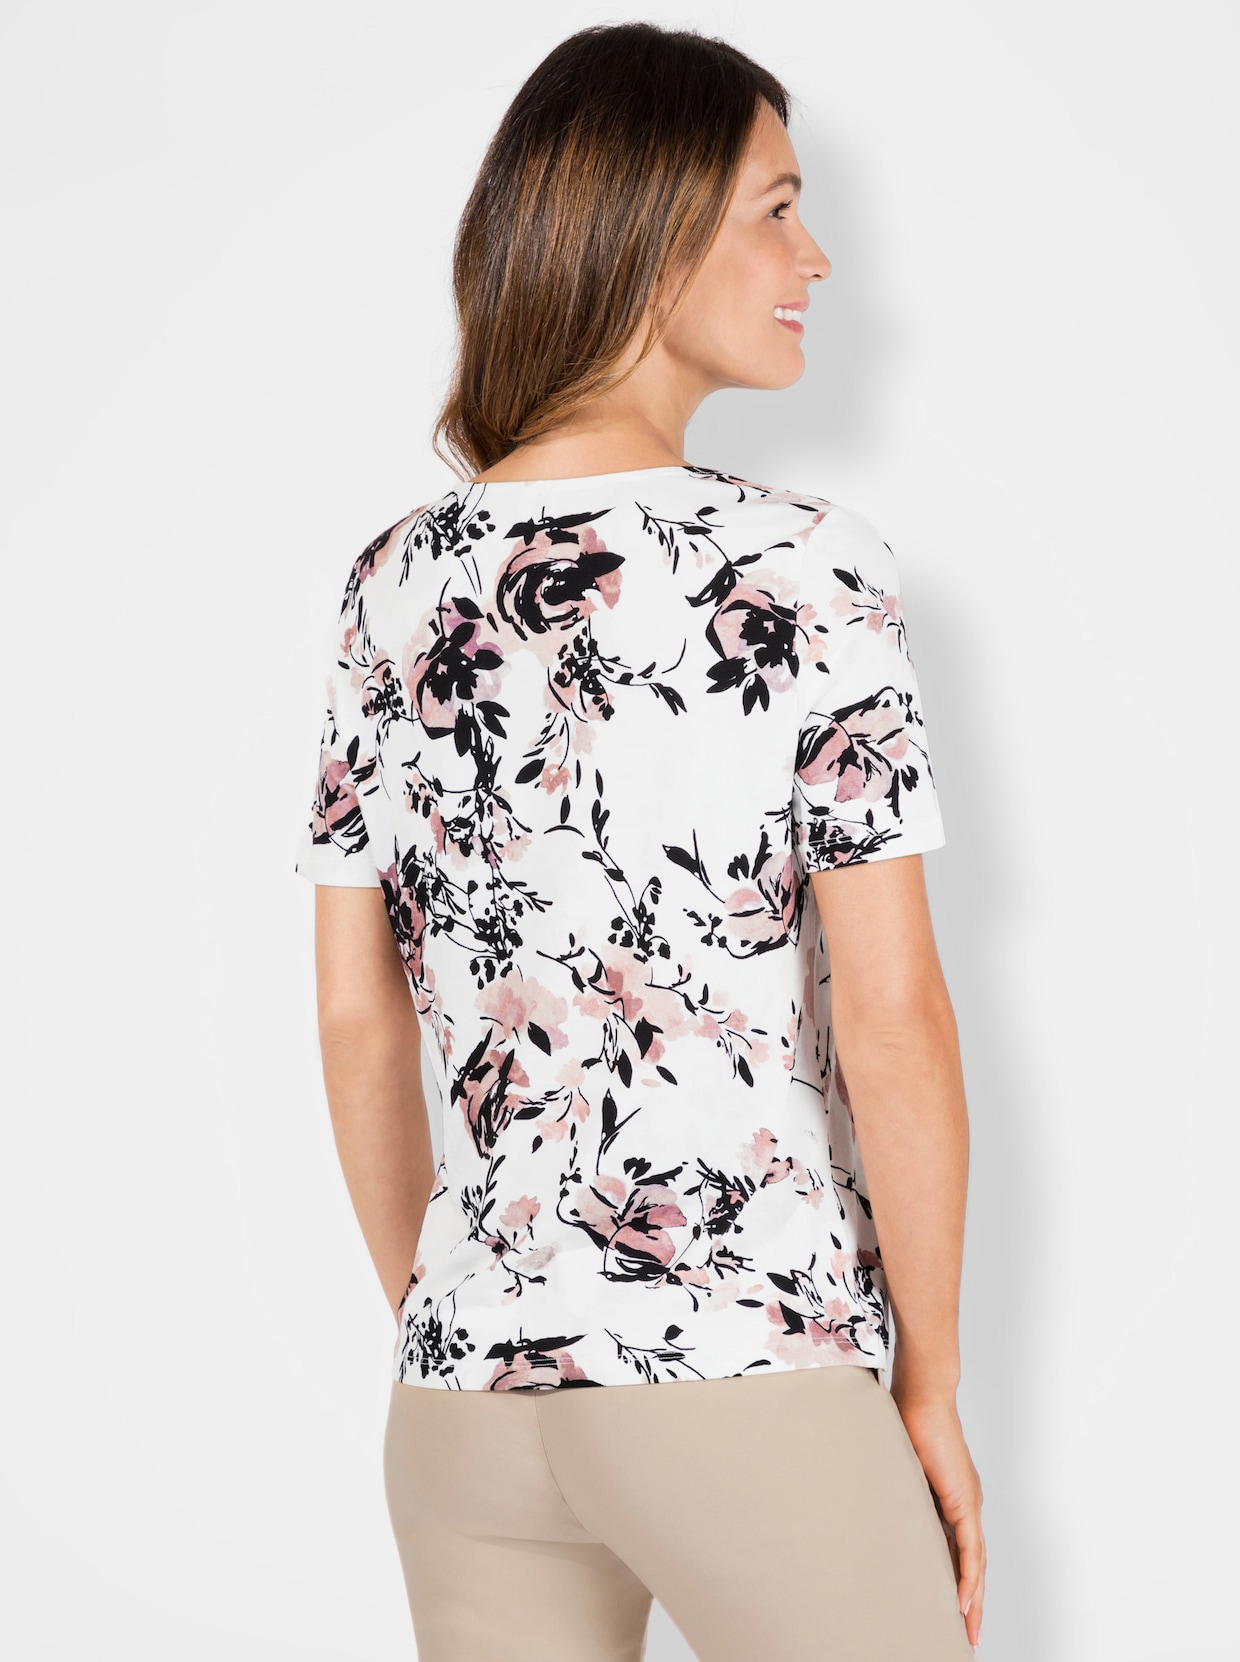 Tričko s krátkymi rukávmi - potlač vo farbe ružového dreva